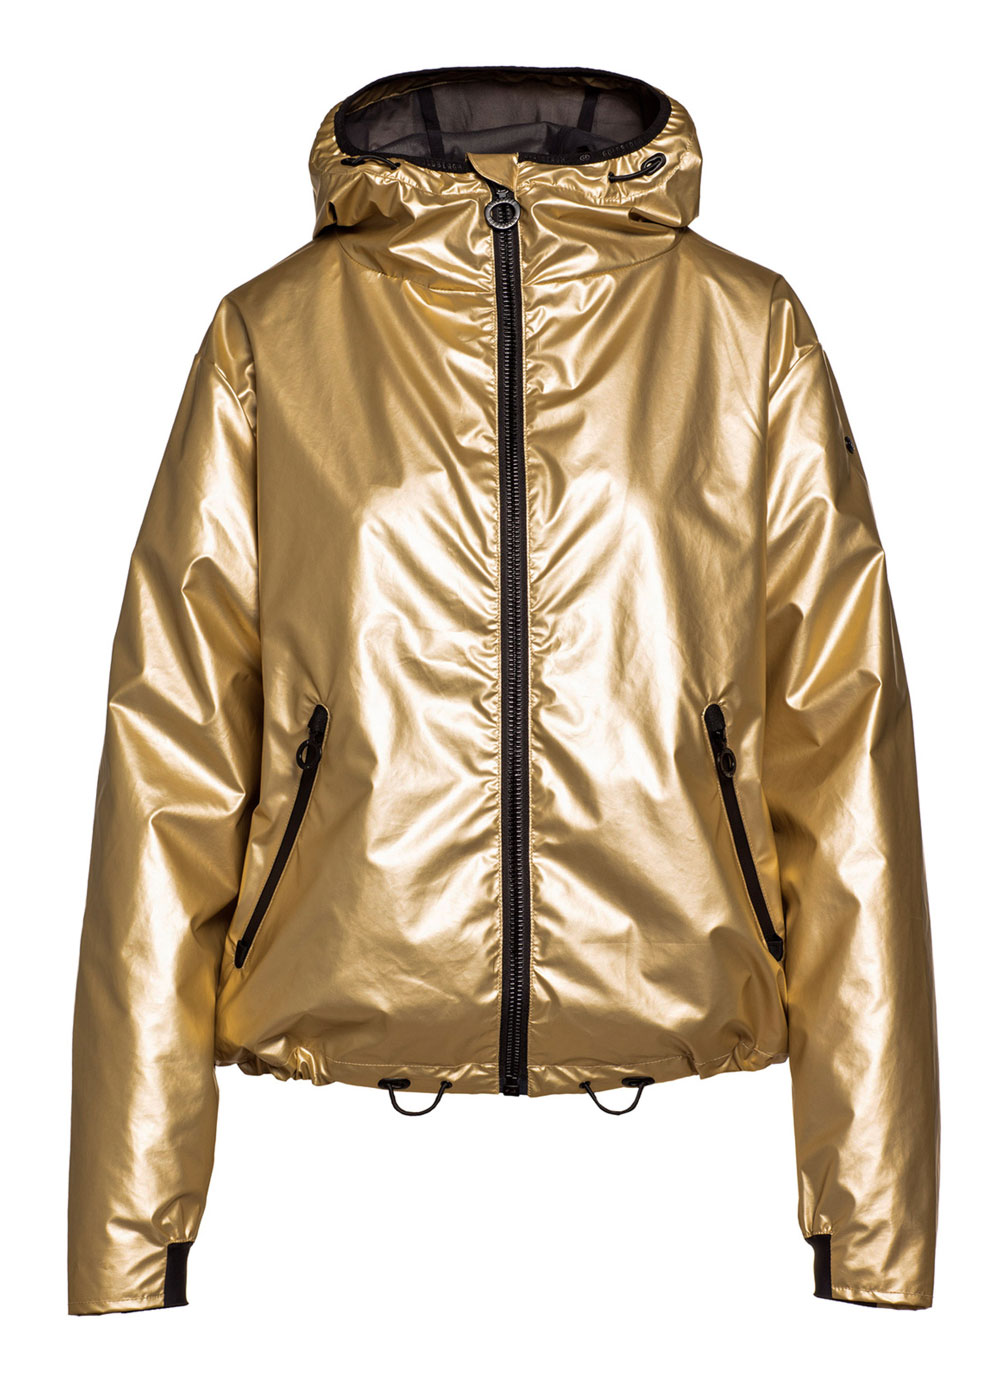 Luxusní bunda Gloria z kolekce Goldbergh Gold